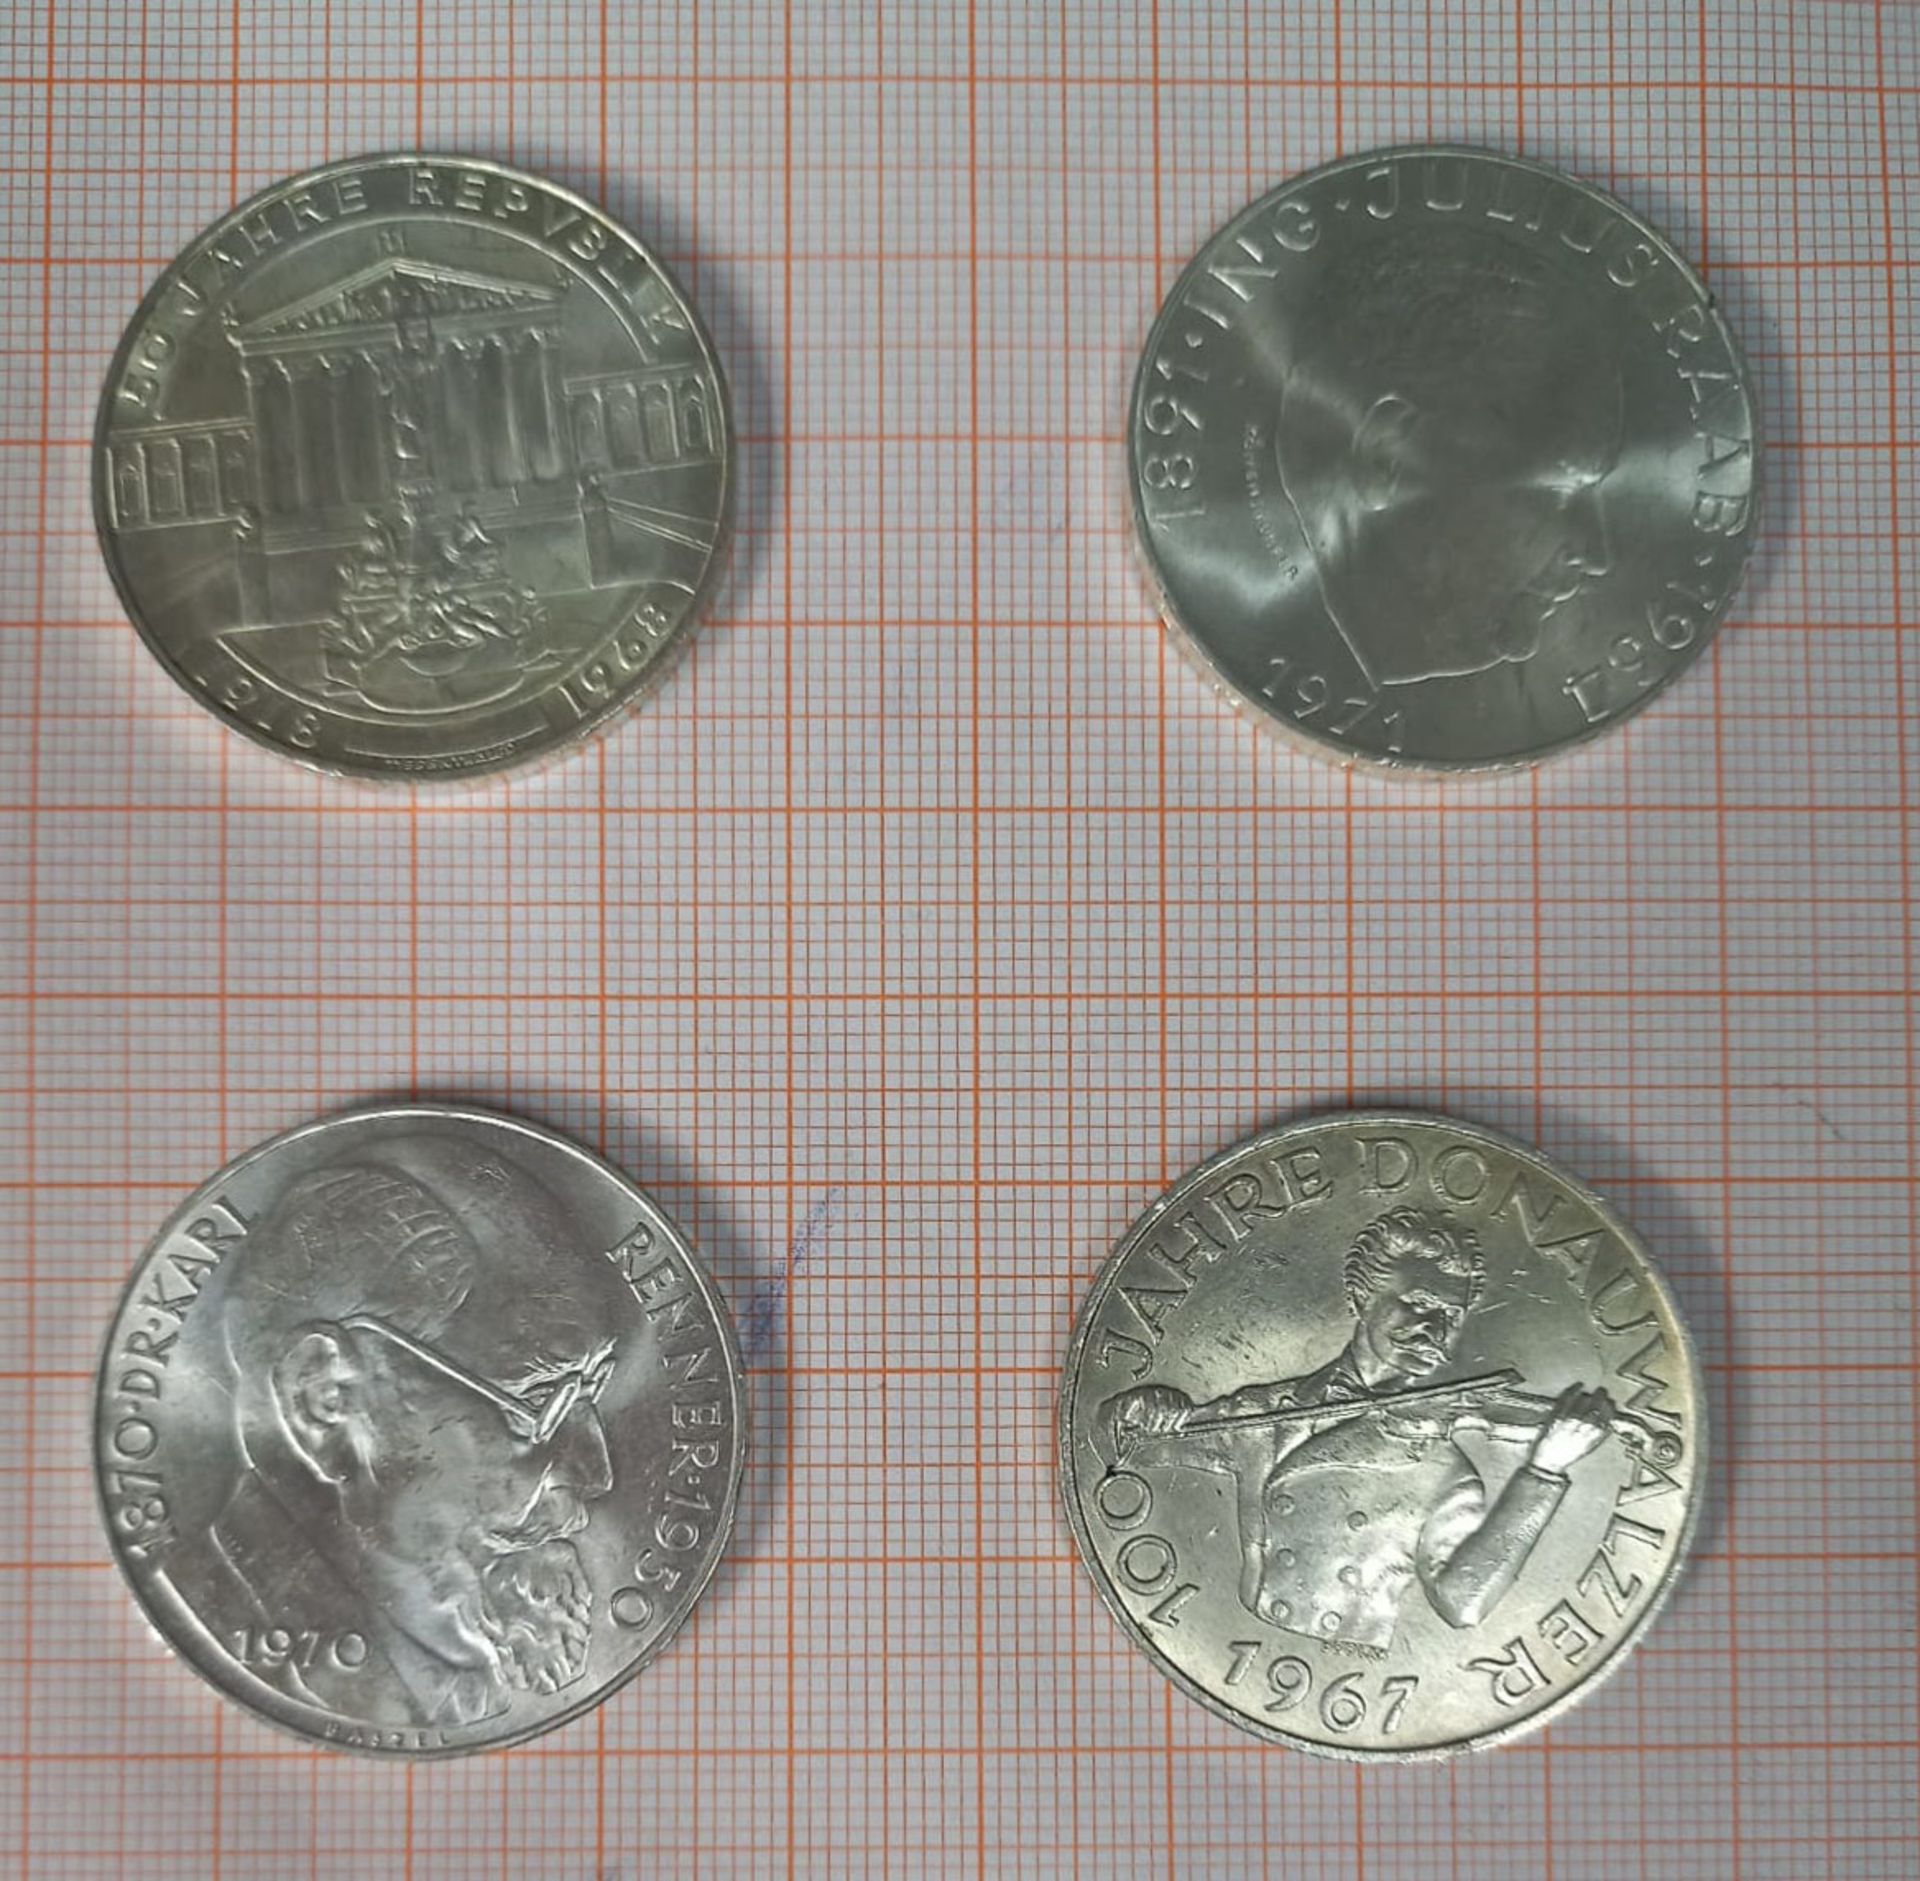 43 Silbermünzen á 50 Schilling. Republik Österreich. - Image 9 of 10